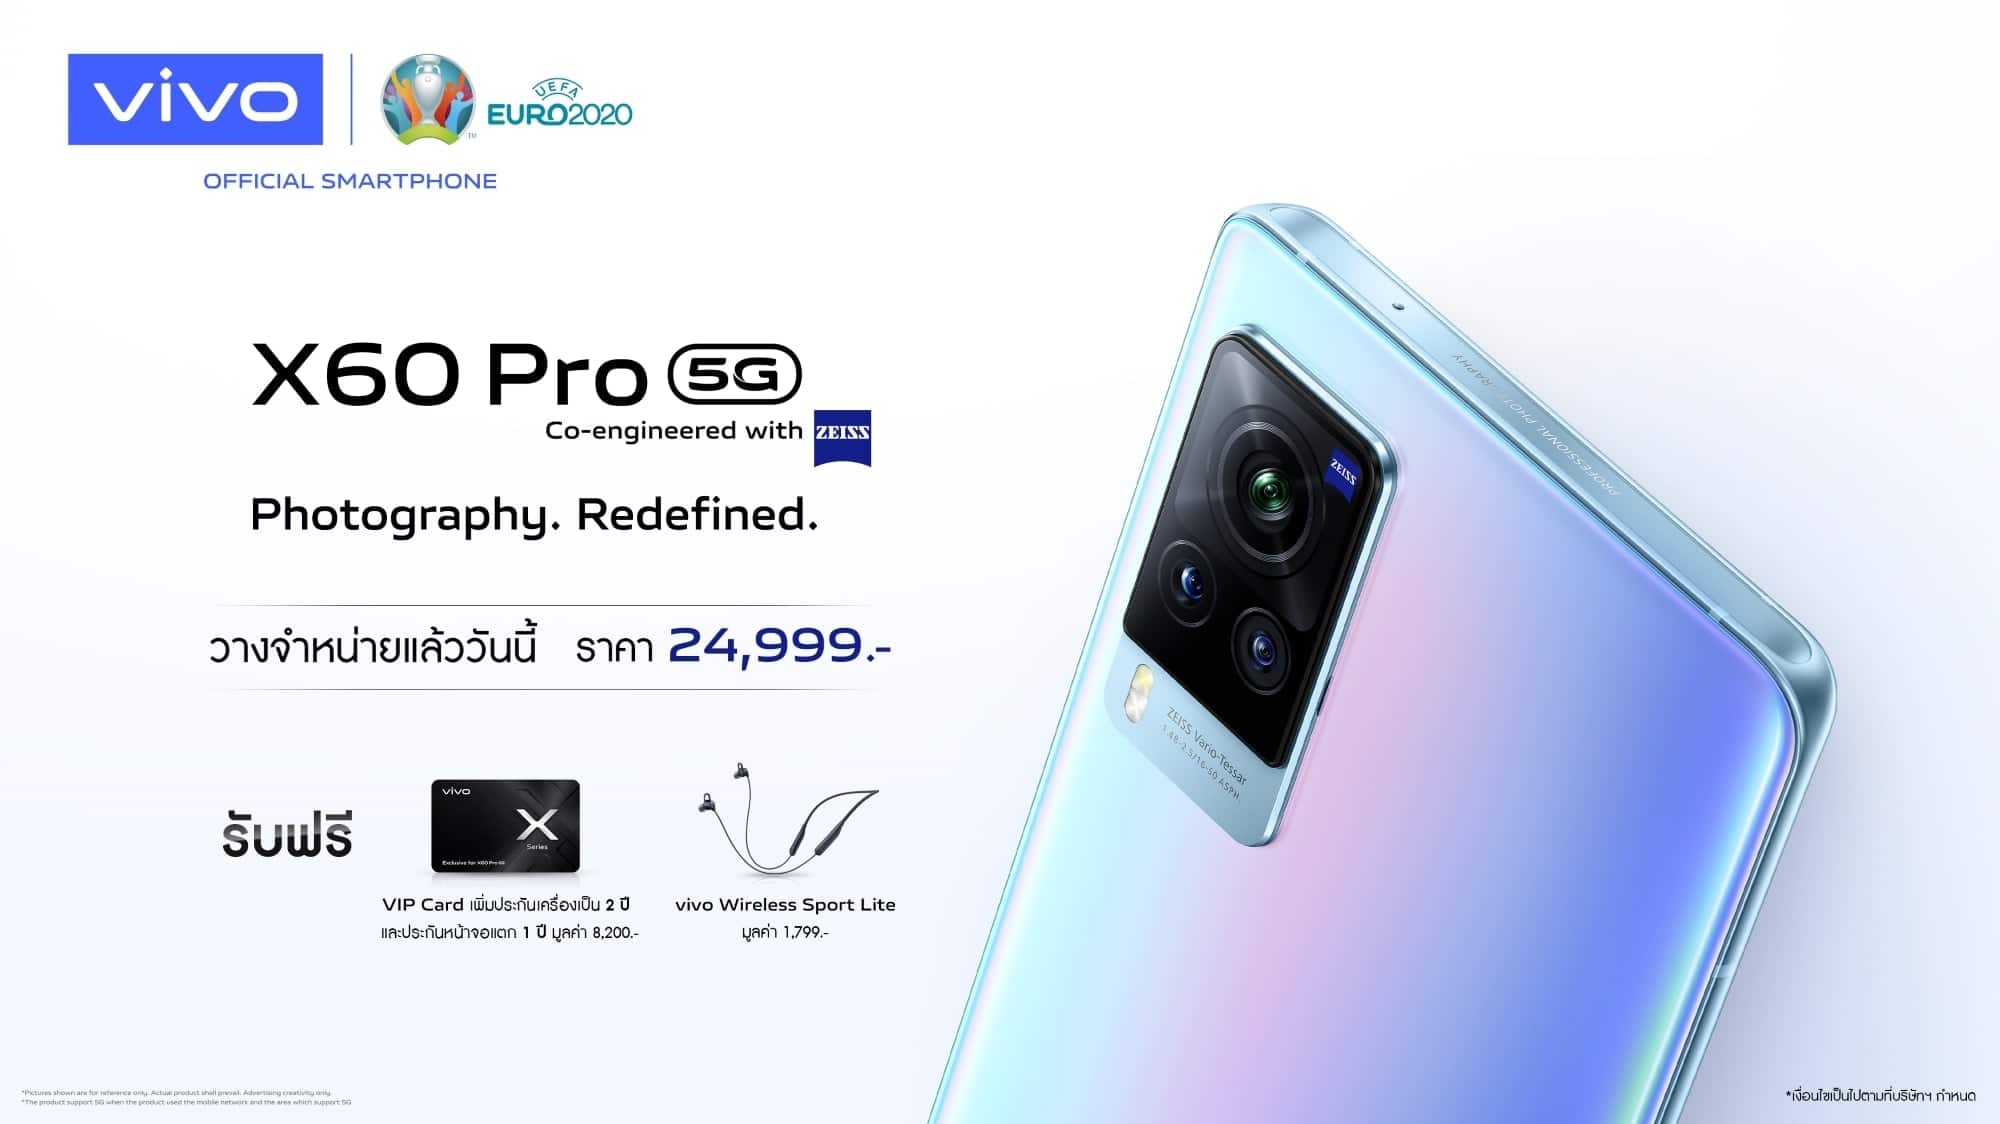 vivo X60 Pro 5G นิยามใหม่ของการถ่ายภาพ ด้วยกล้องที่พัฒนาร่วมกับ ZEISS วางจำหน่ายอย่างเป็นทางการในไทยแล้ววันนี้! 1